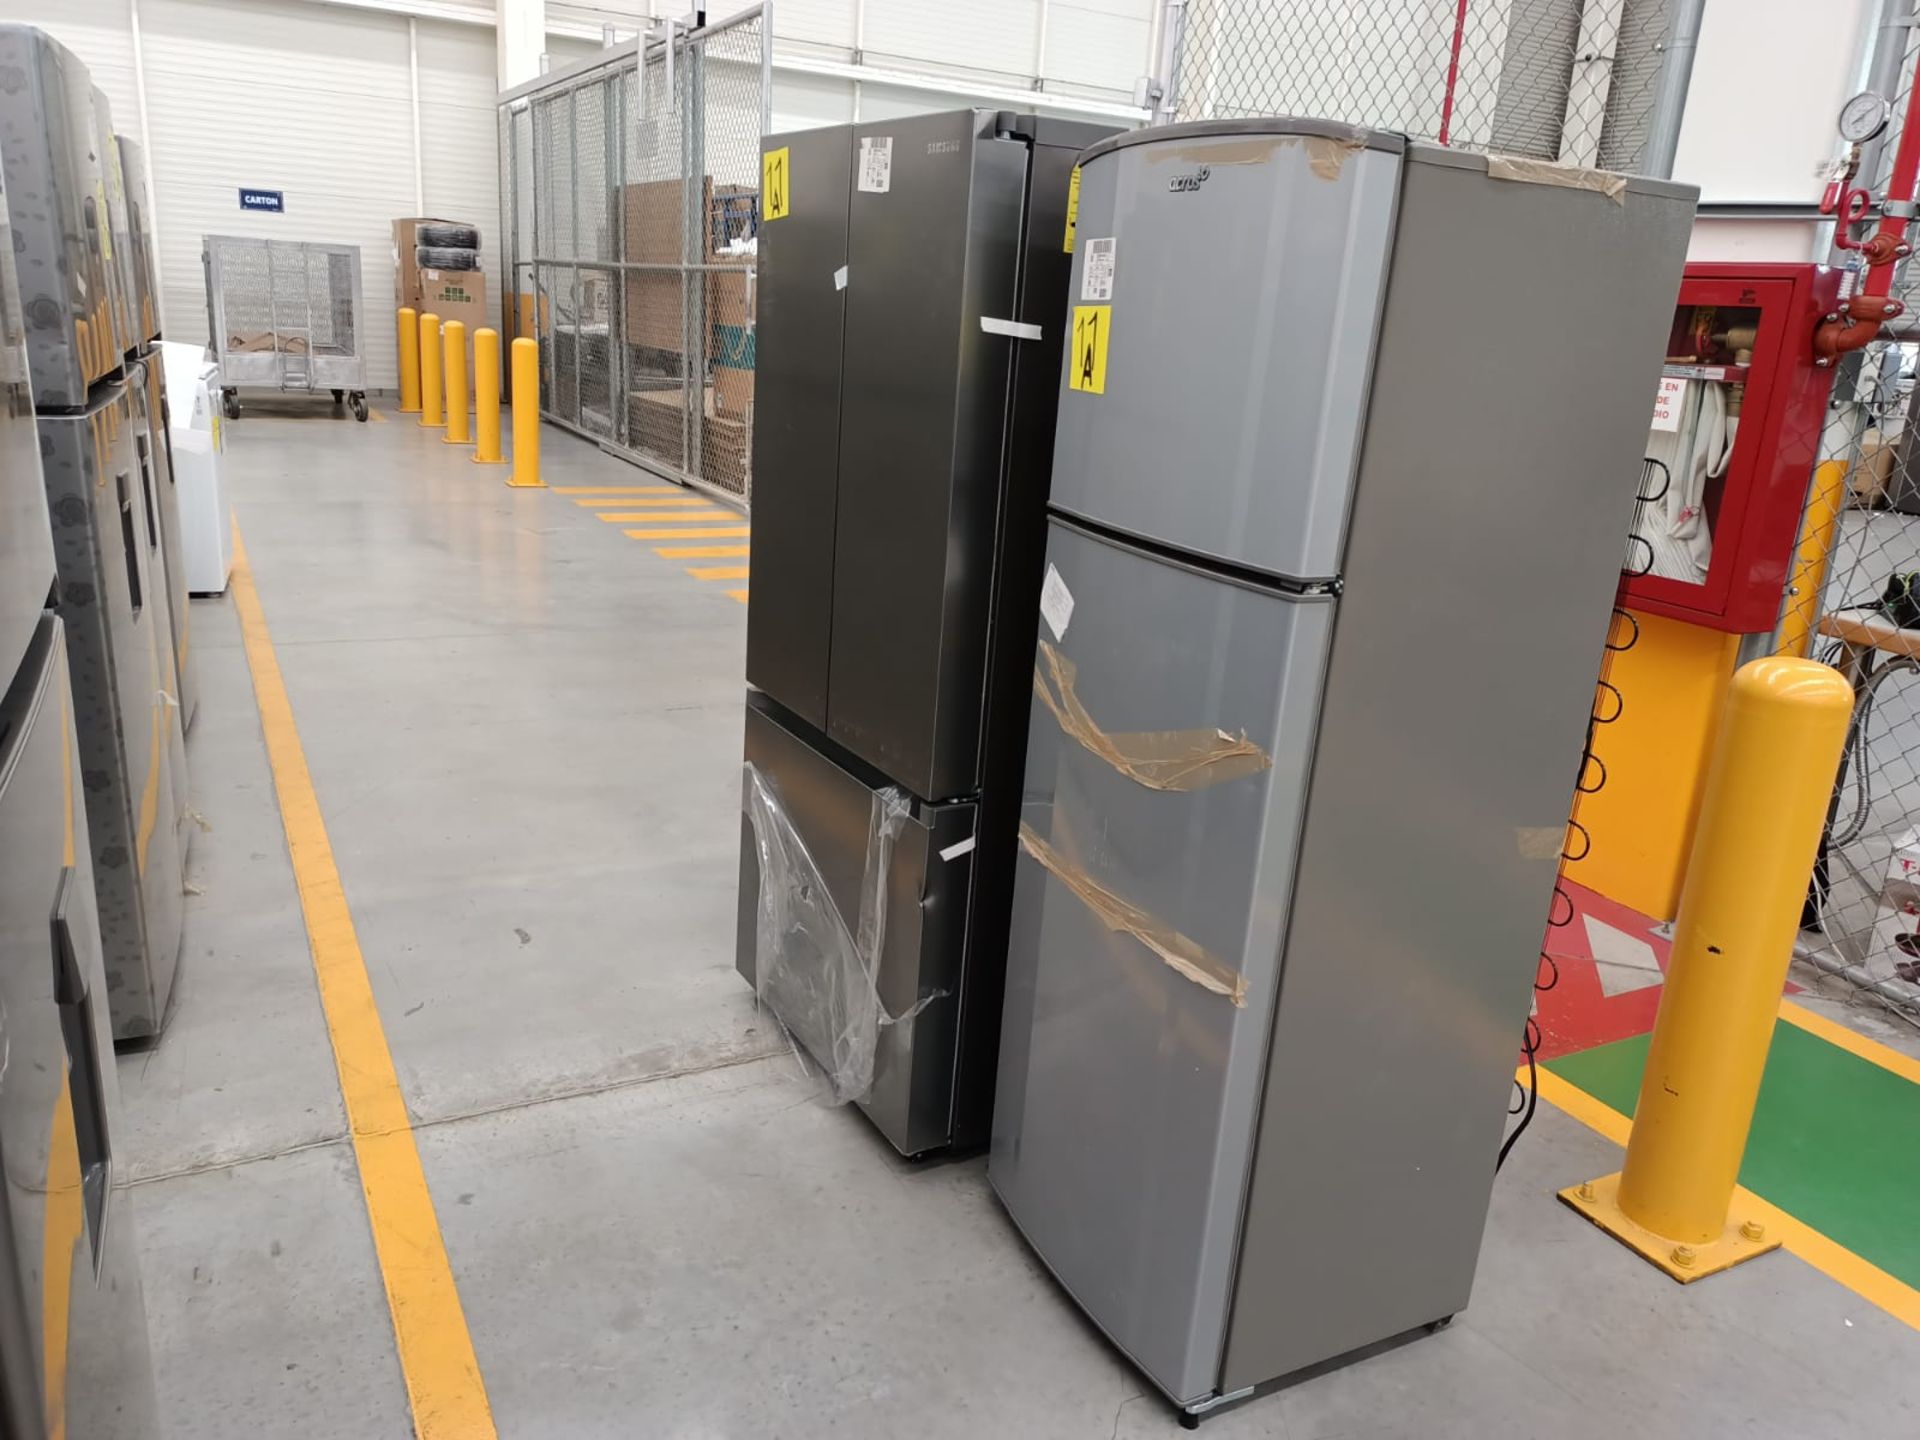 Lote de 2 refrigeradores incluye: 1 refrigerador marca Samsung, modelo RF22A4010S9/EM - Image 8 of 51